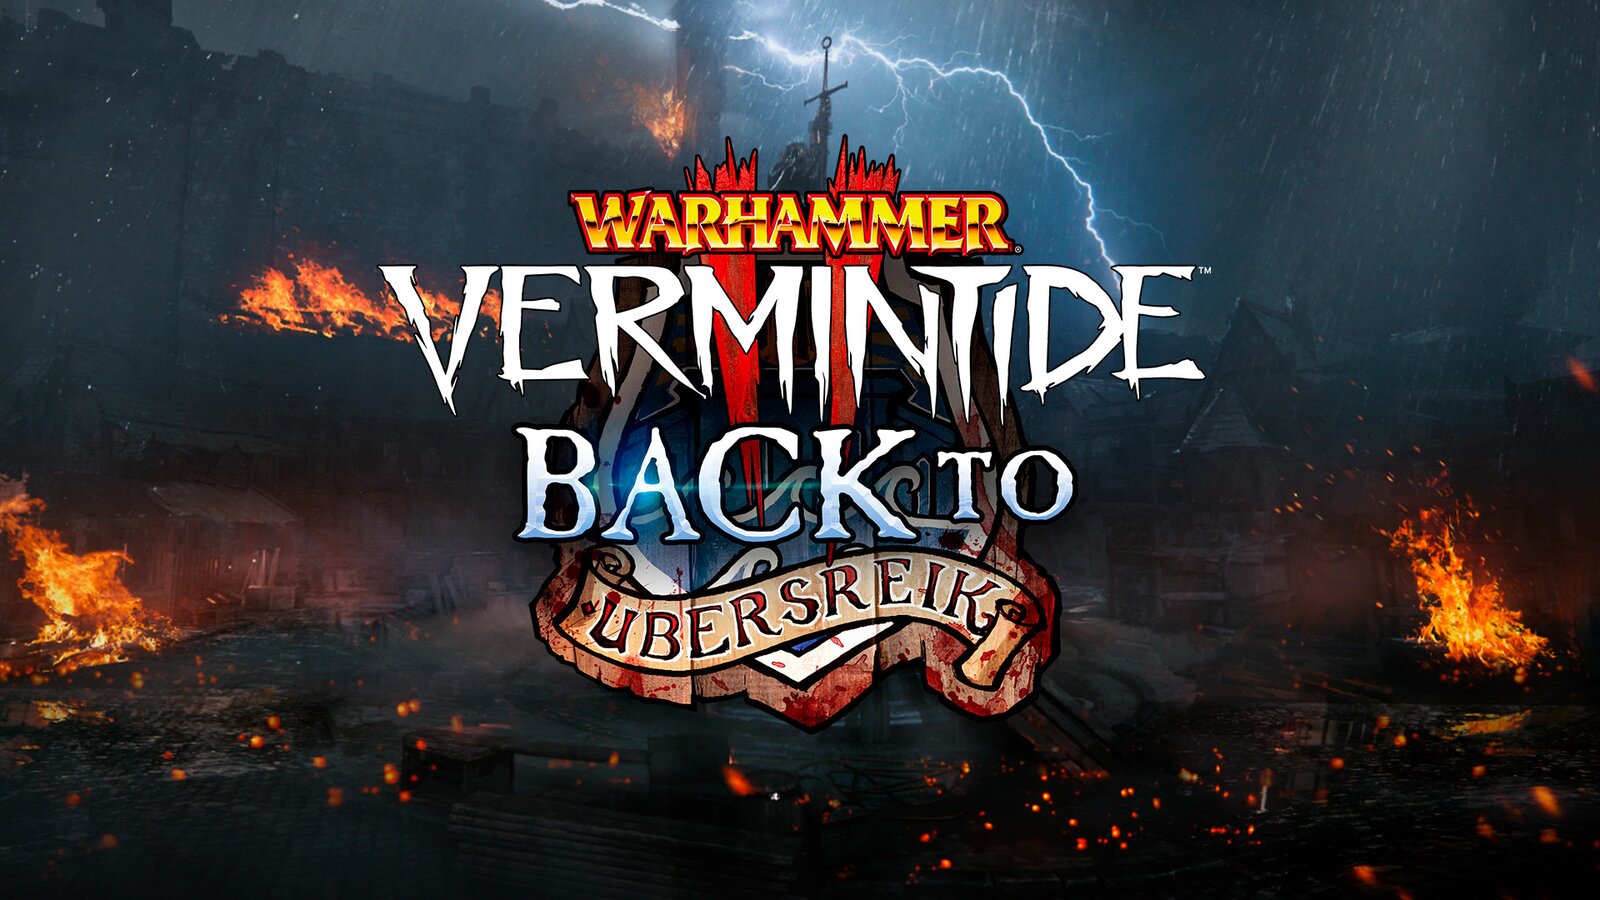 Warhammer: Vermintide 2 - Back to Ubersreik